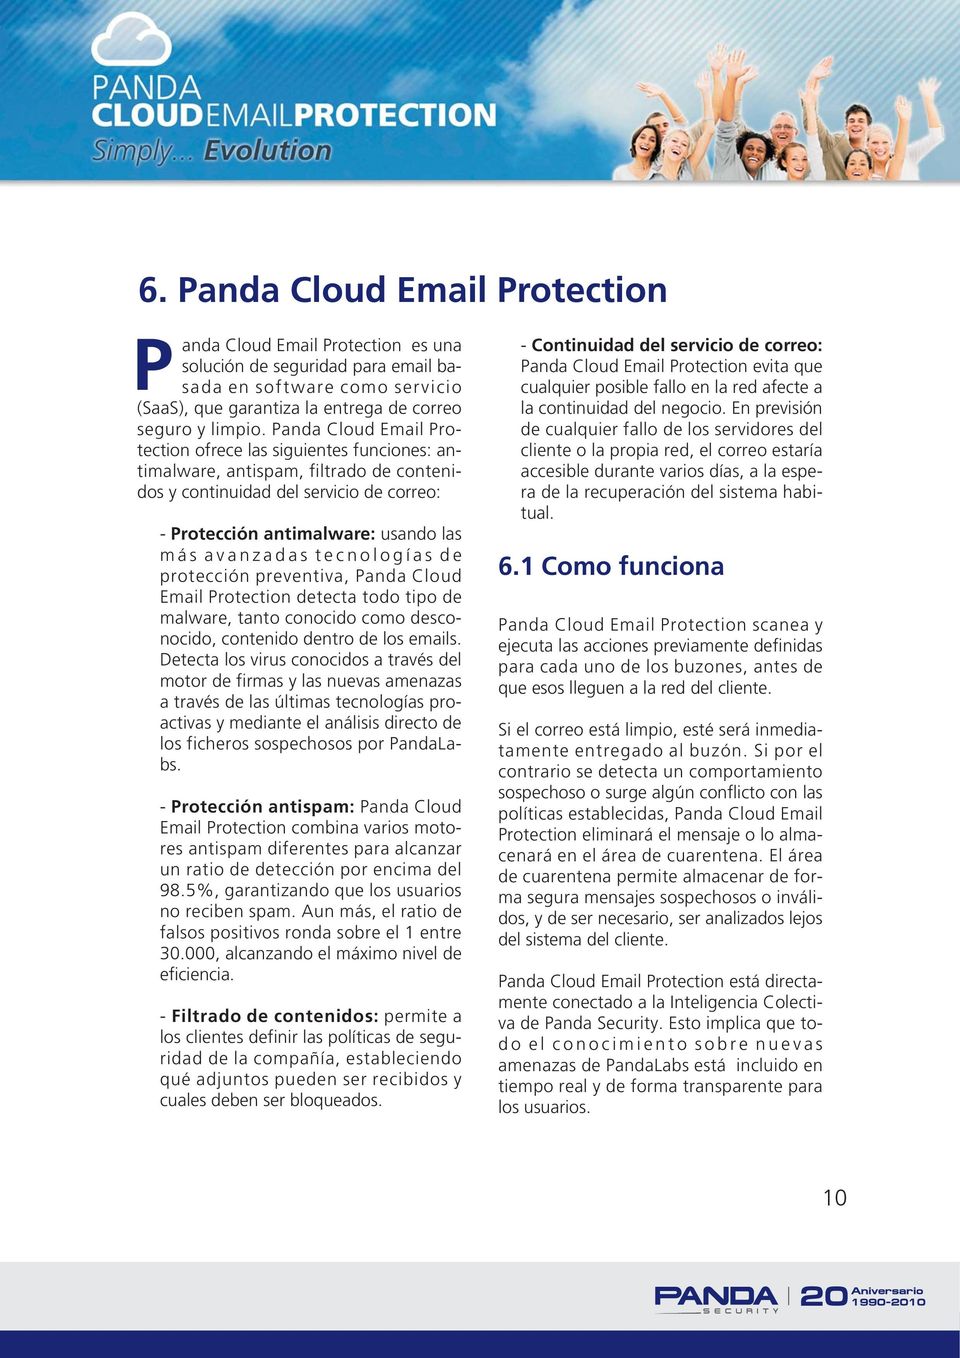 tecnologías de protección preventiva, Panda Cloud Email Protection detecta todo tipo de malware, tanto conocido como desconocido, contenido dentro de los emails.